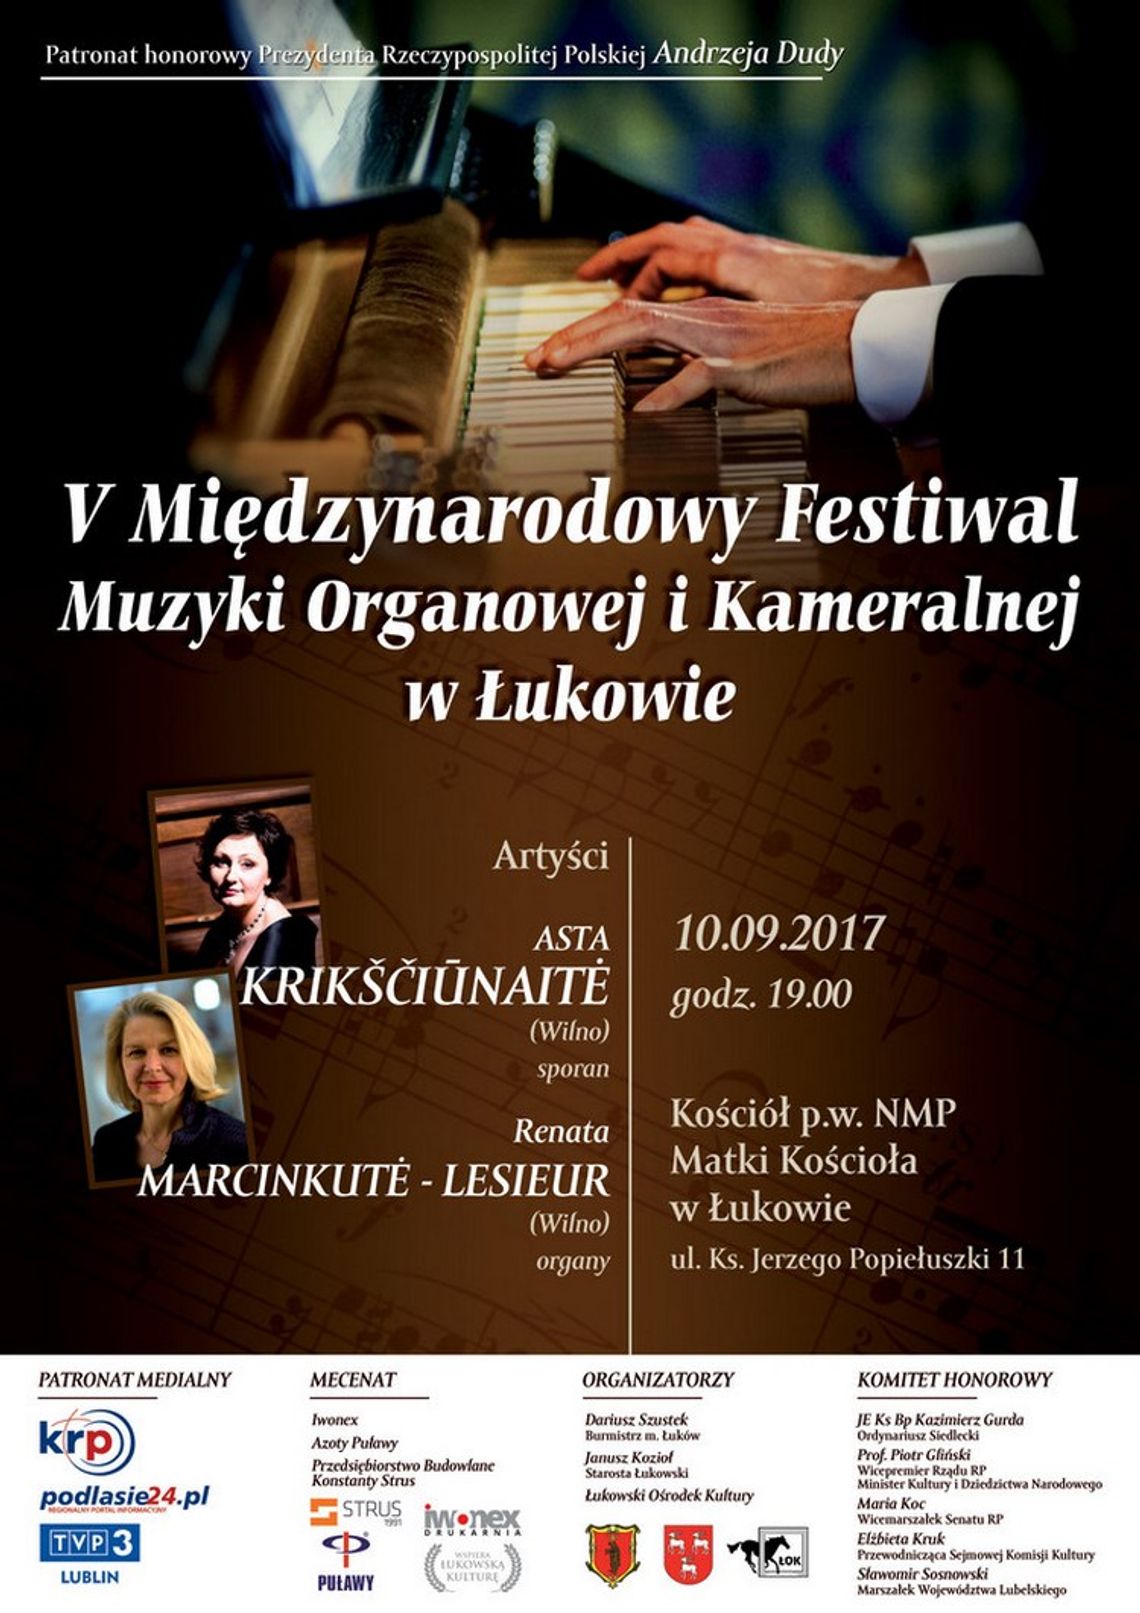 V Międzynarodowy Festiwal Muzyki Organowej i Kameralnej - Asta Krikščiūnaitė i Renata Marcinkutė-Lesieur